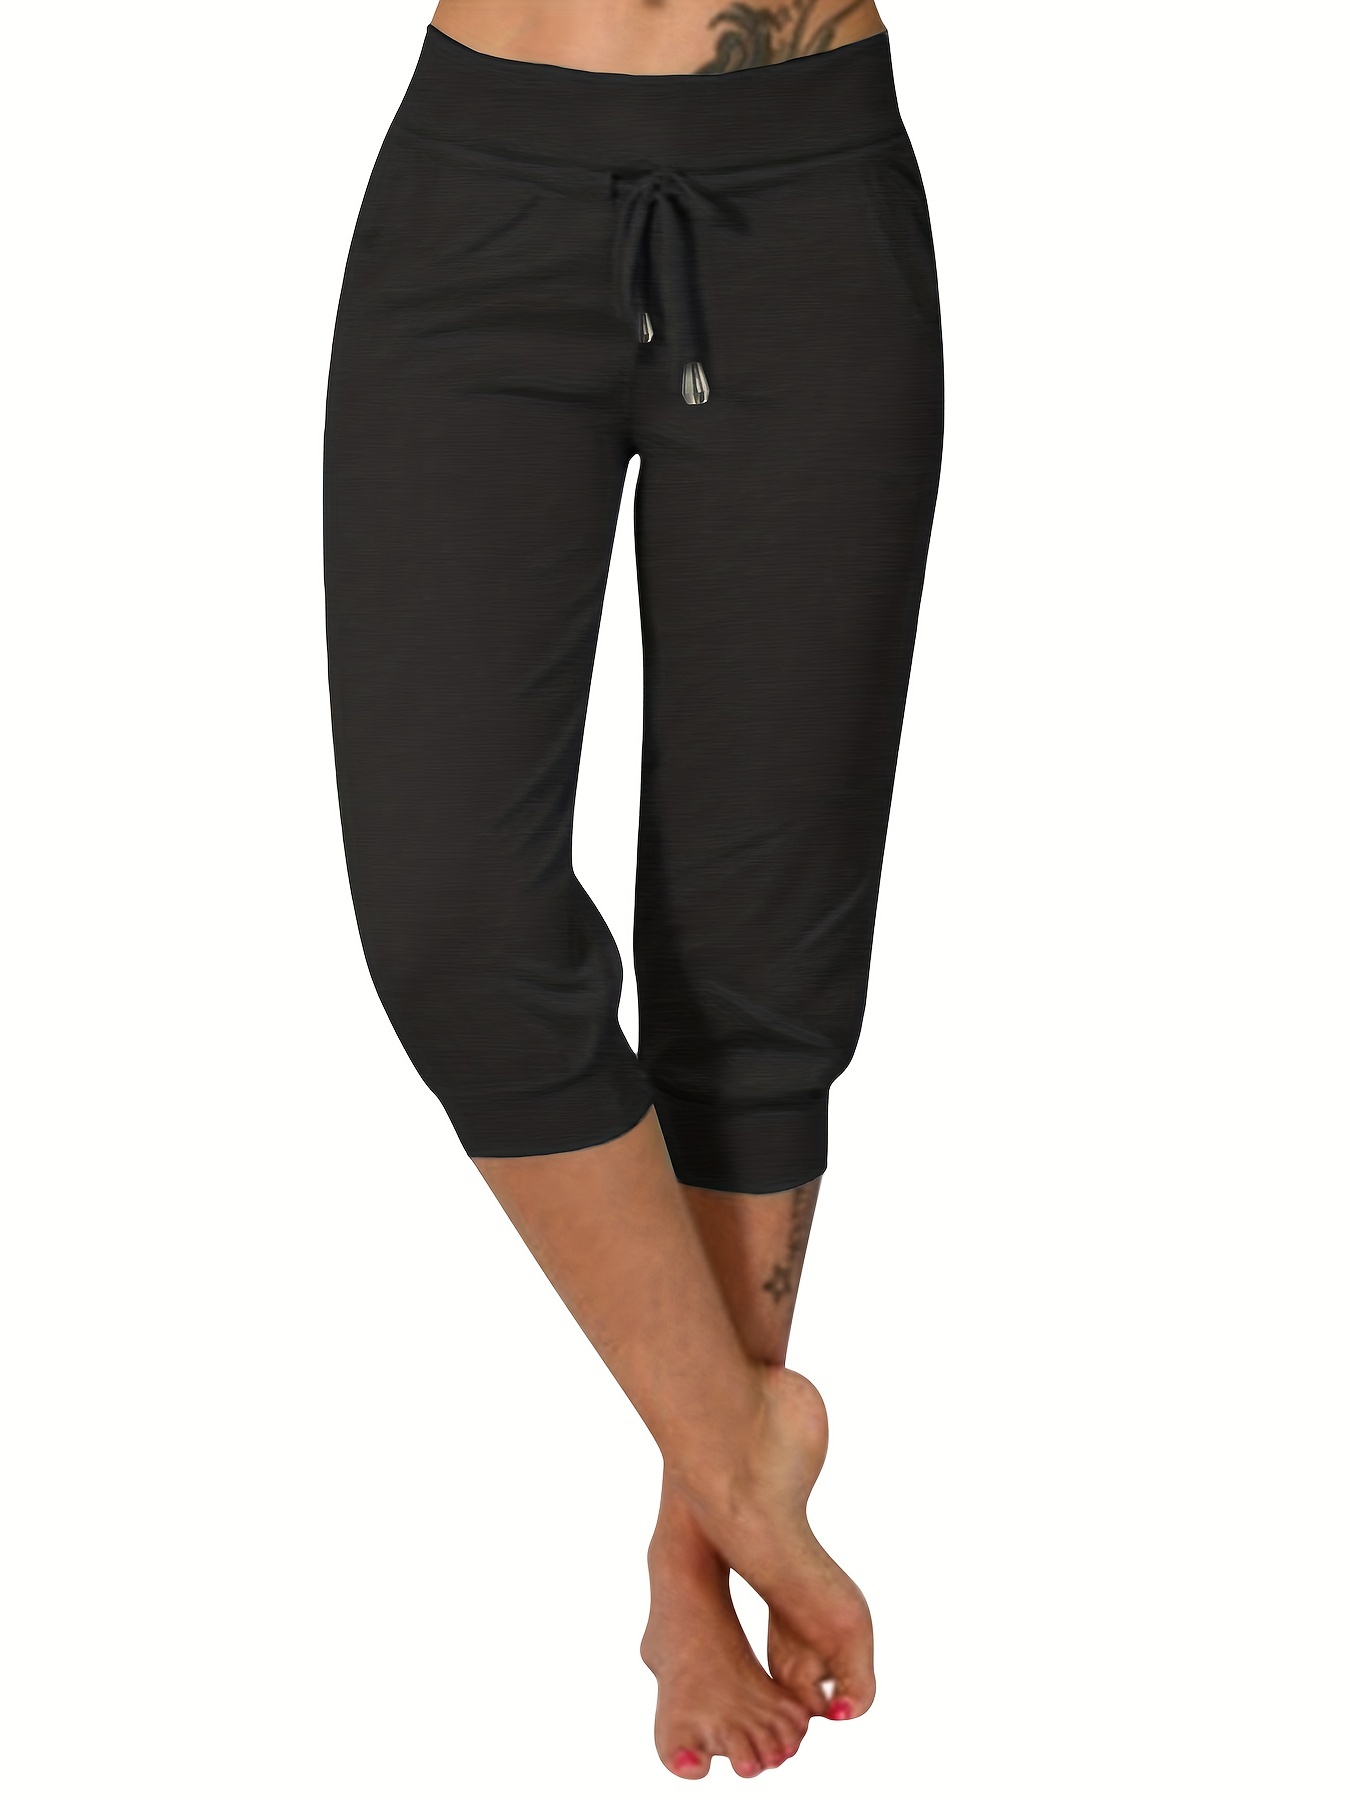 TARSE - Pantalones capri de yoga para mujer, holgados, suaves, con cordón,  pantalones deportivos casuales con bolsillos